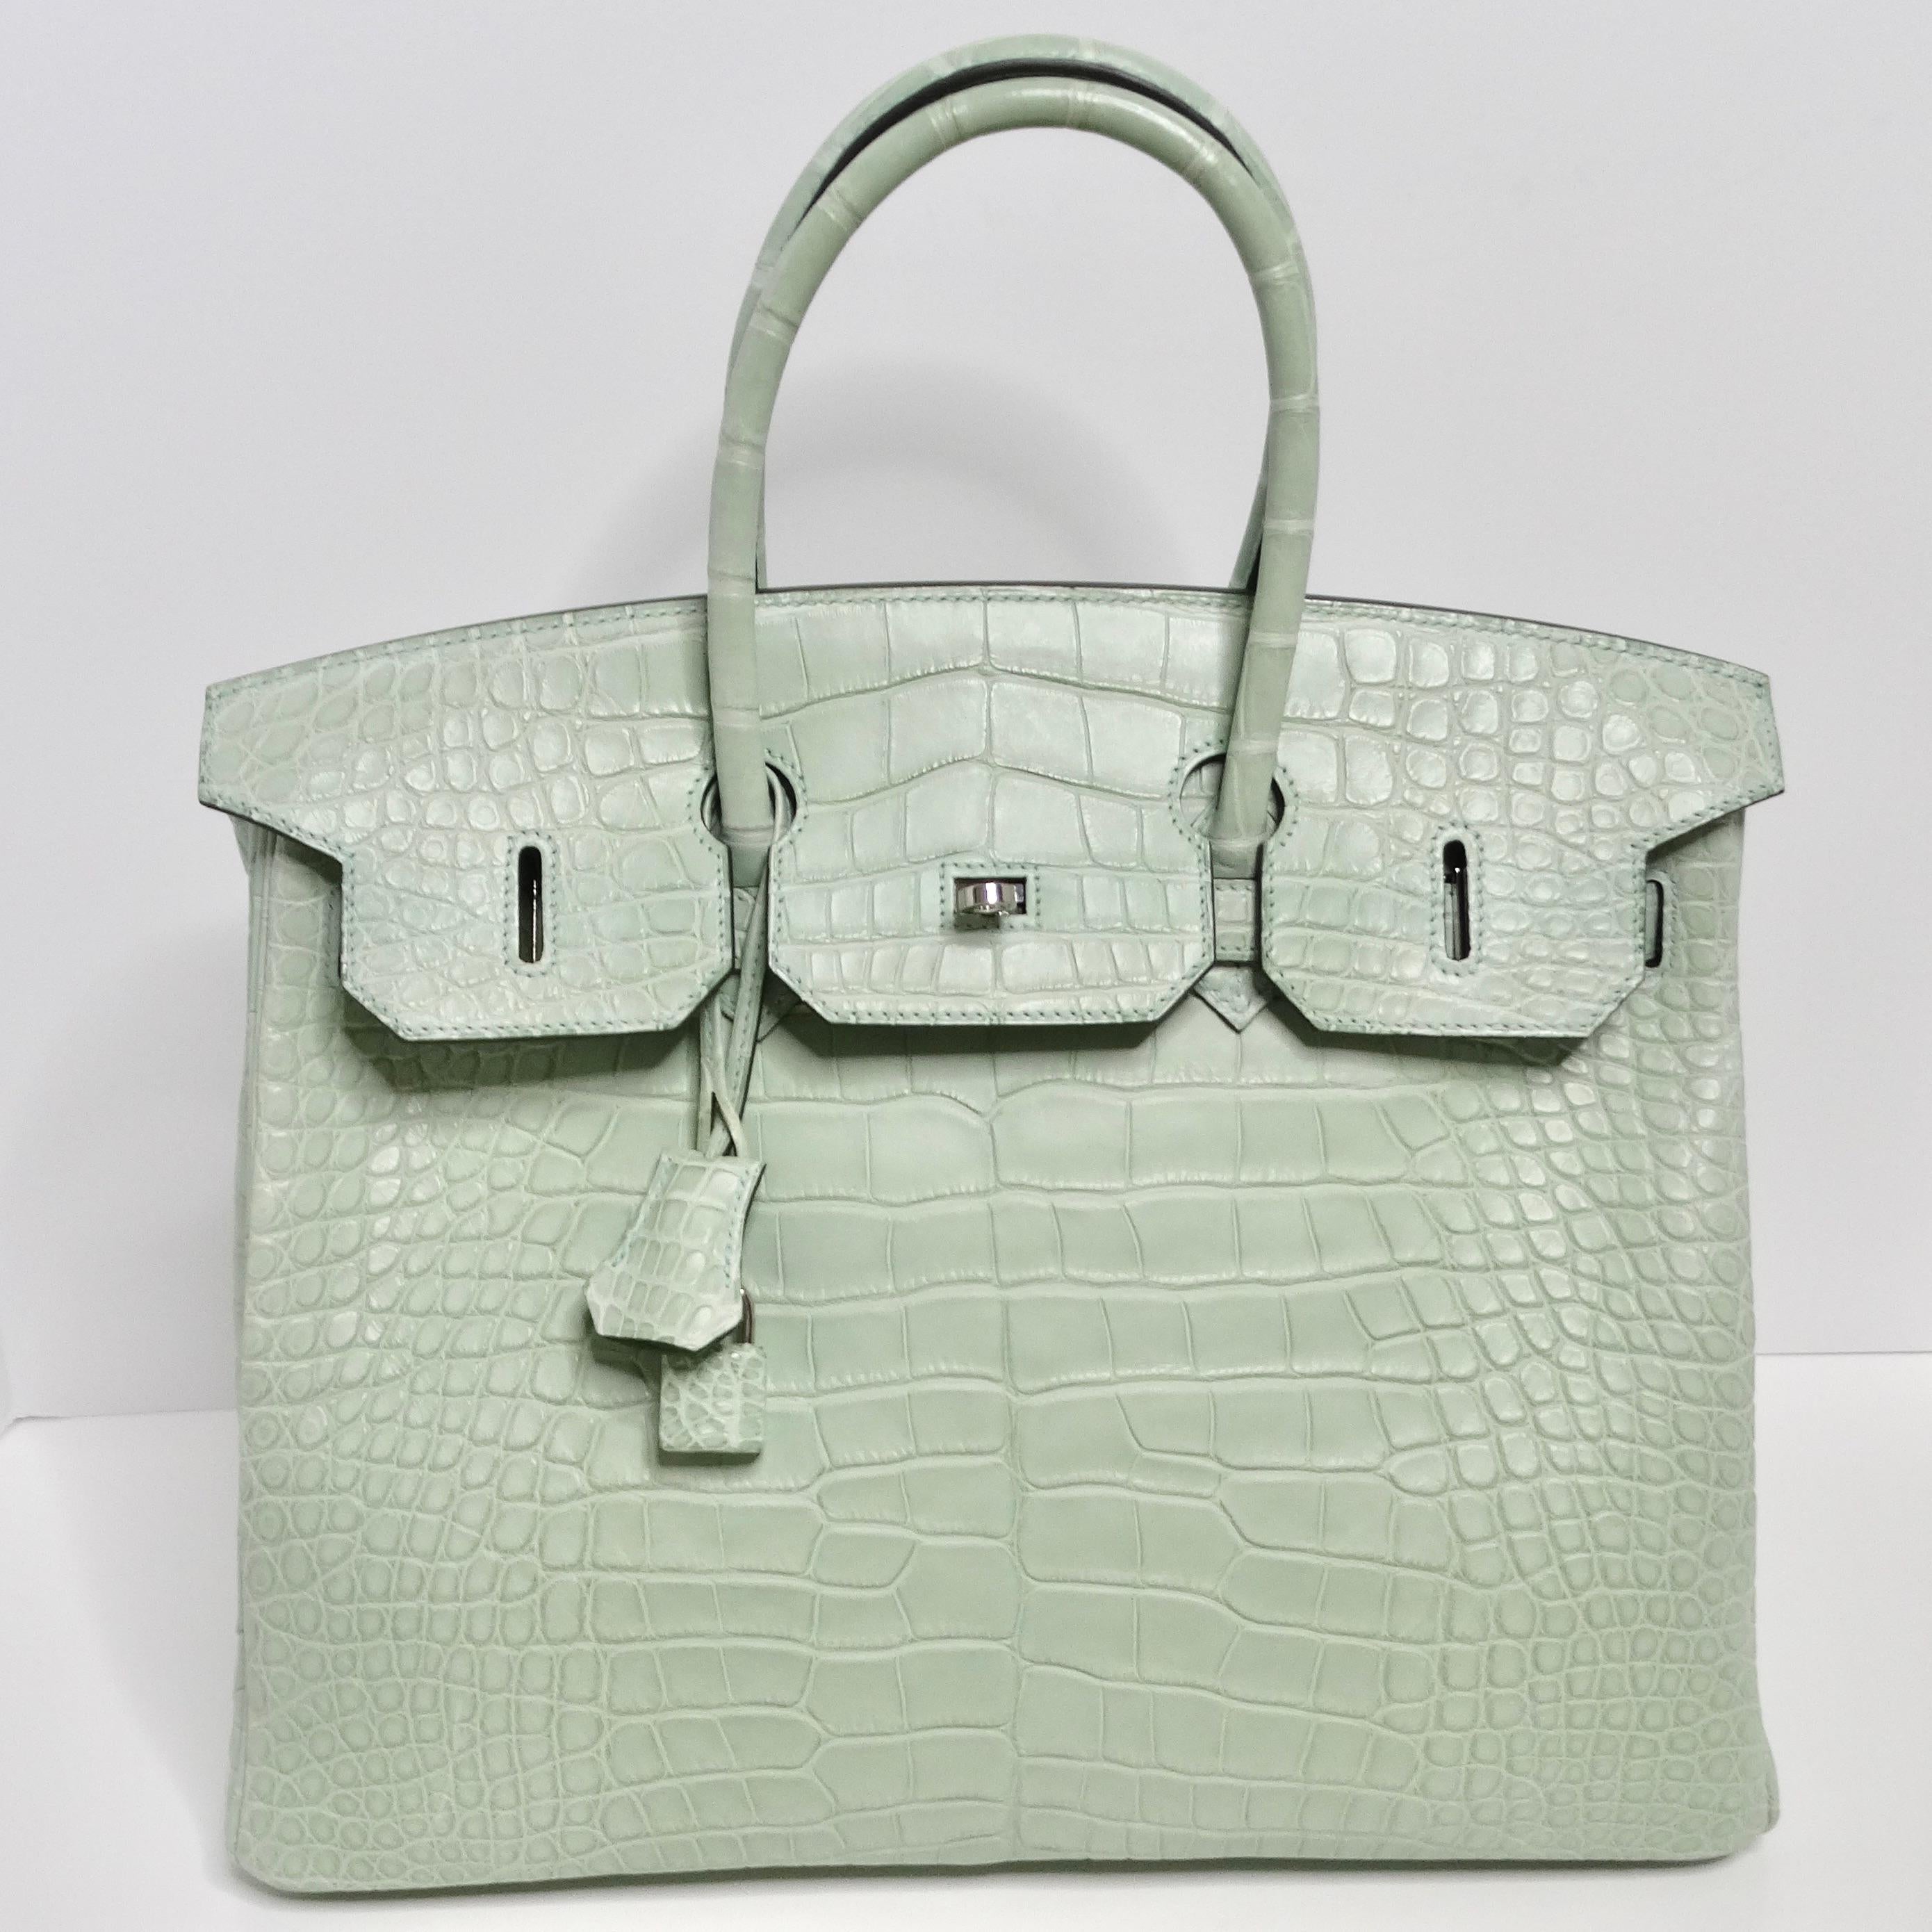 Le sac à main Hermès Birkin 35 Vert D'Eau Alligator Matte Palladium Hardware est l'incarnation même du luxe et de la sophistication. Confectionné en 2021, ce sac à main emblématique témoigne du savoir-faire impeccable et du design intemporel